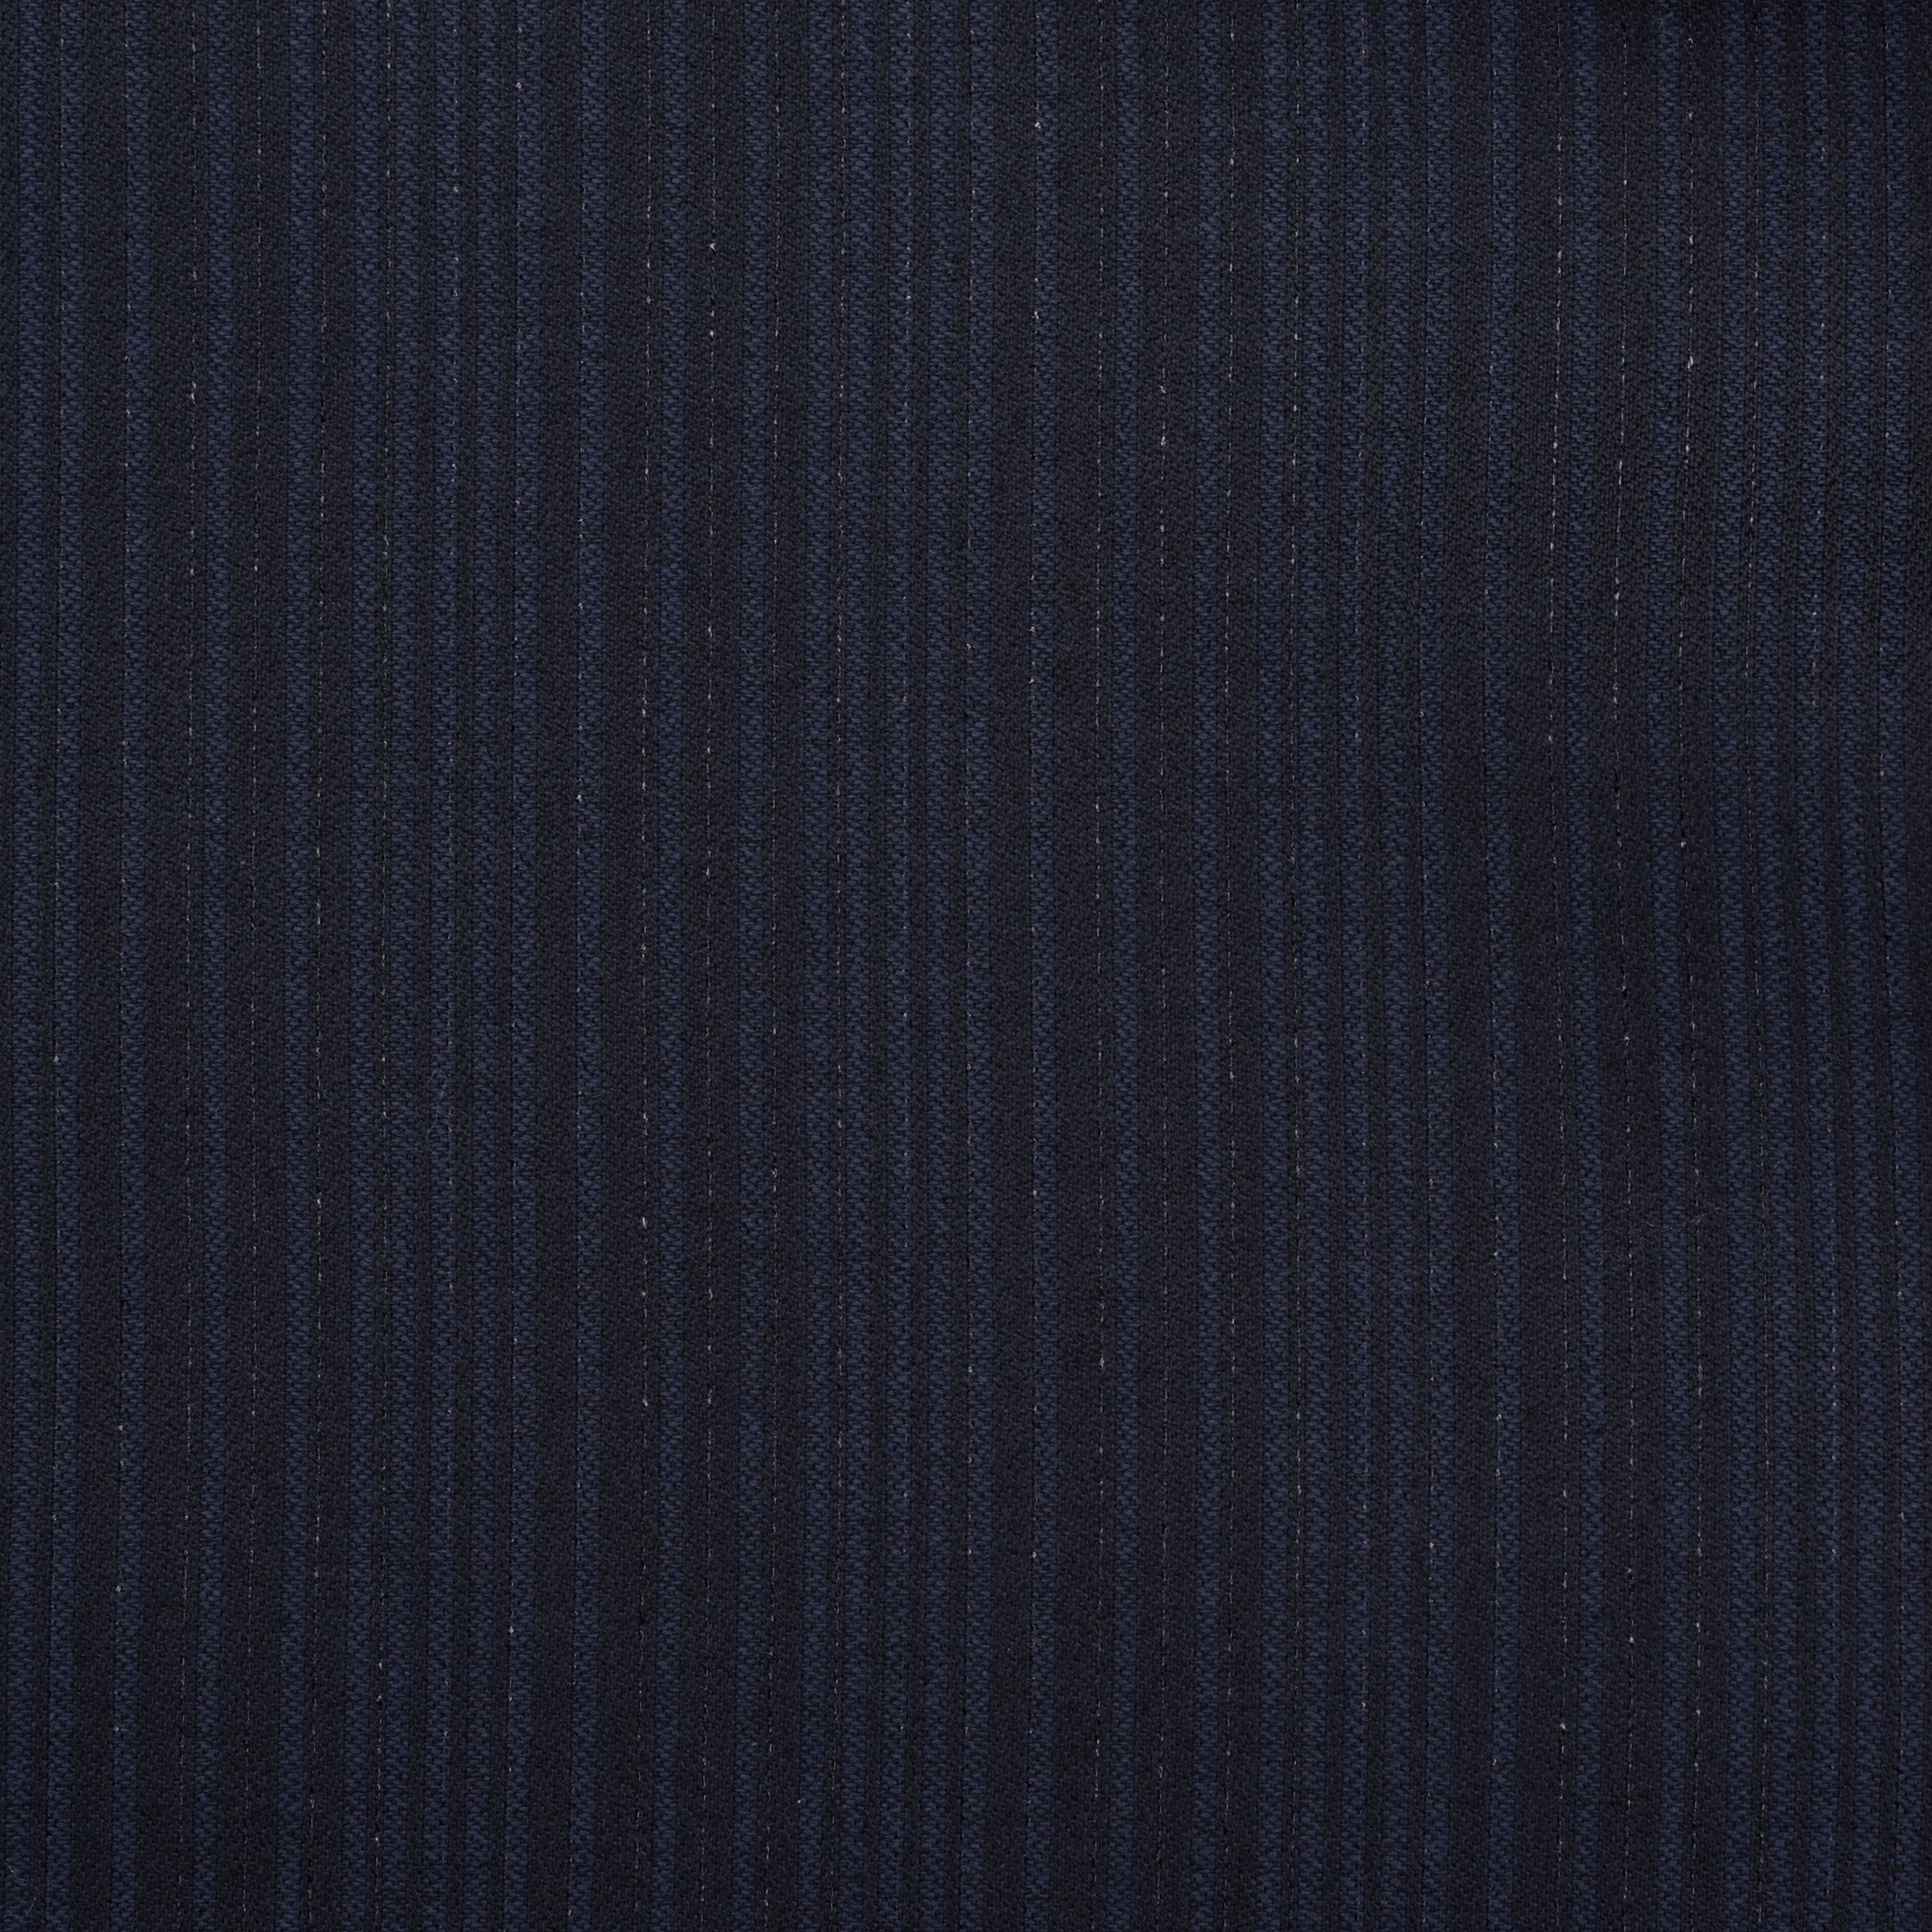 SARTORIA CASTANGIA Handmade Blue Striped Wool Dinner Jacket EU 50 NEW US 40 CASTANGIA